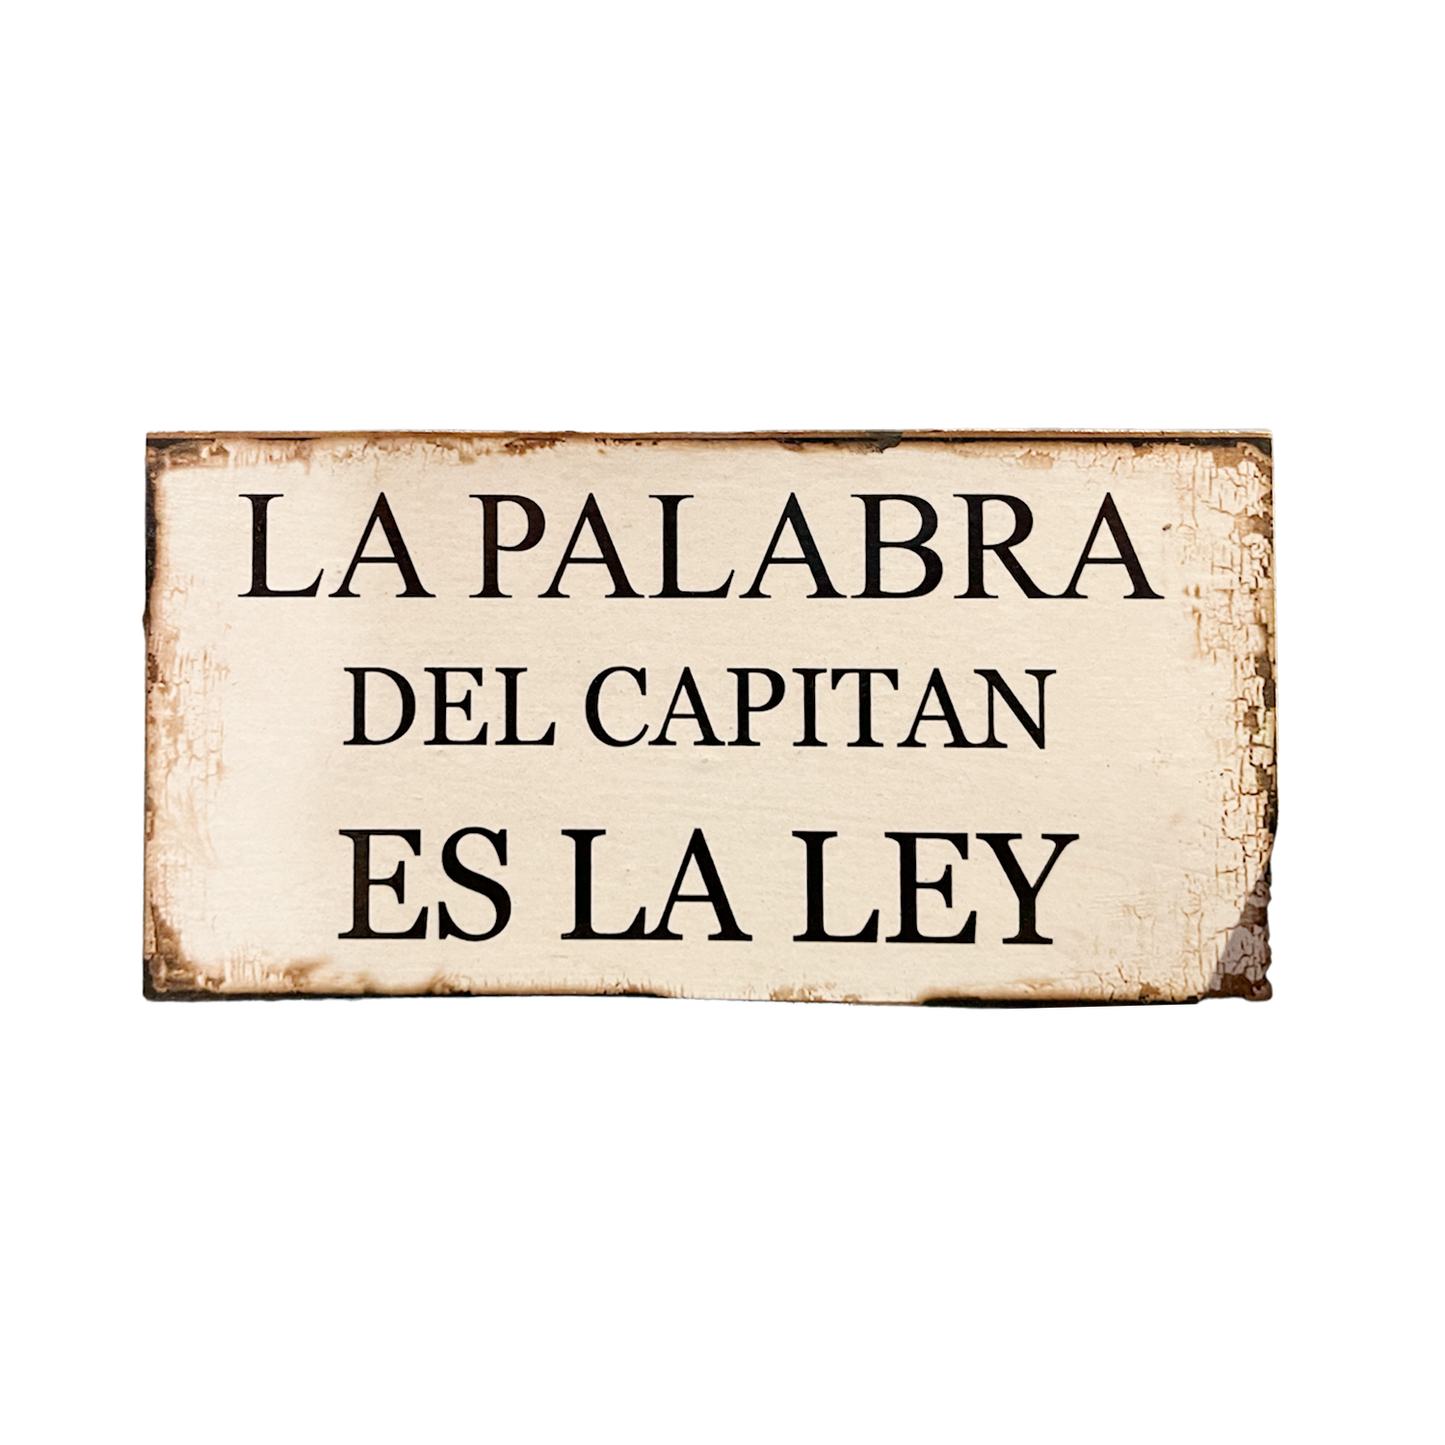 Afiche "La palabra del capitán"